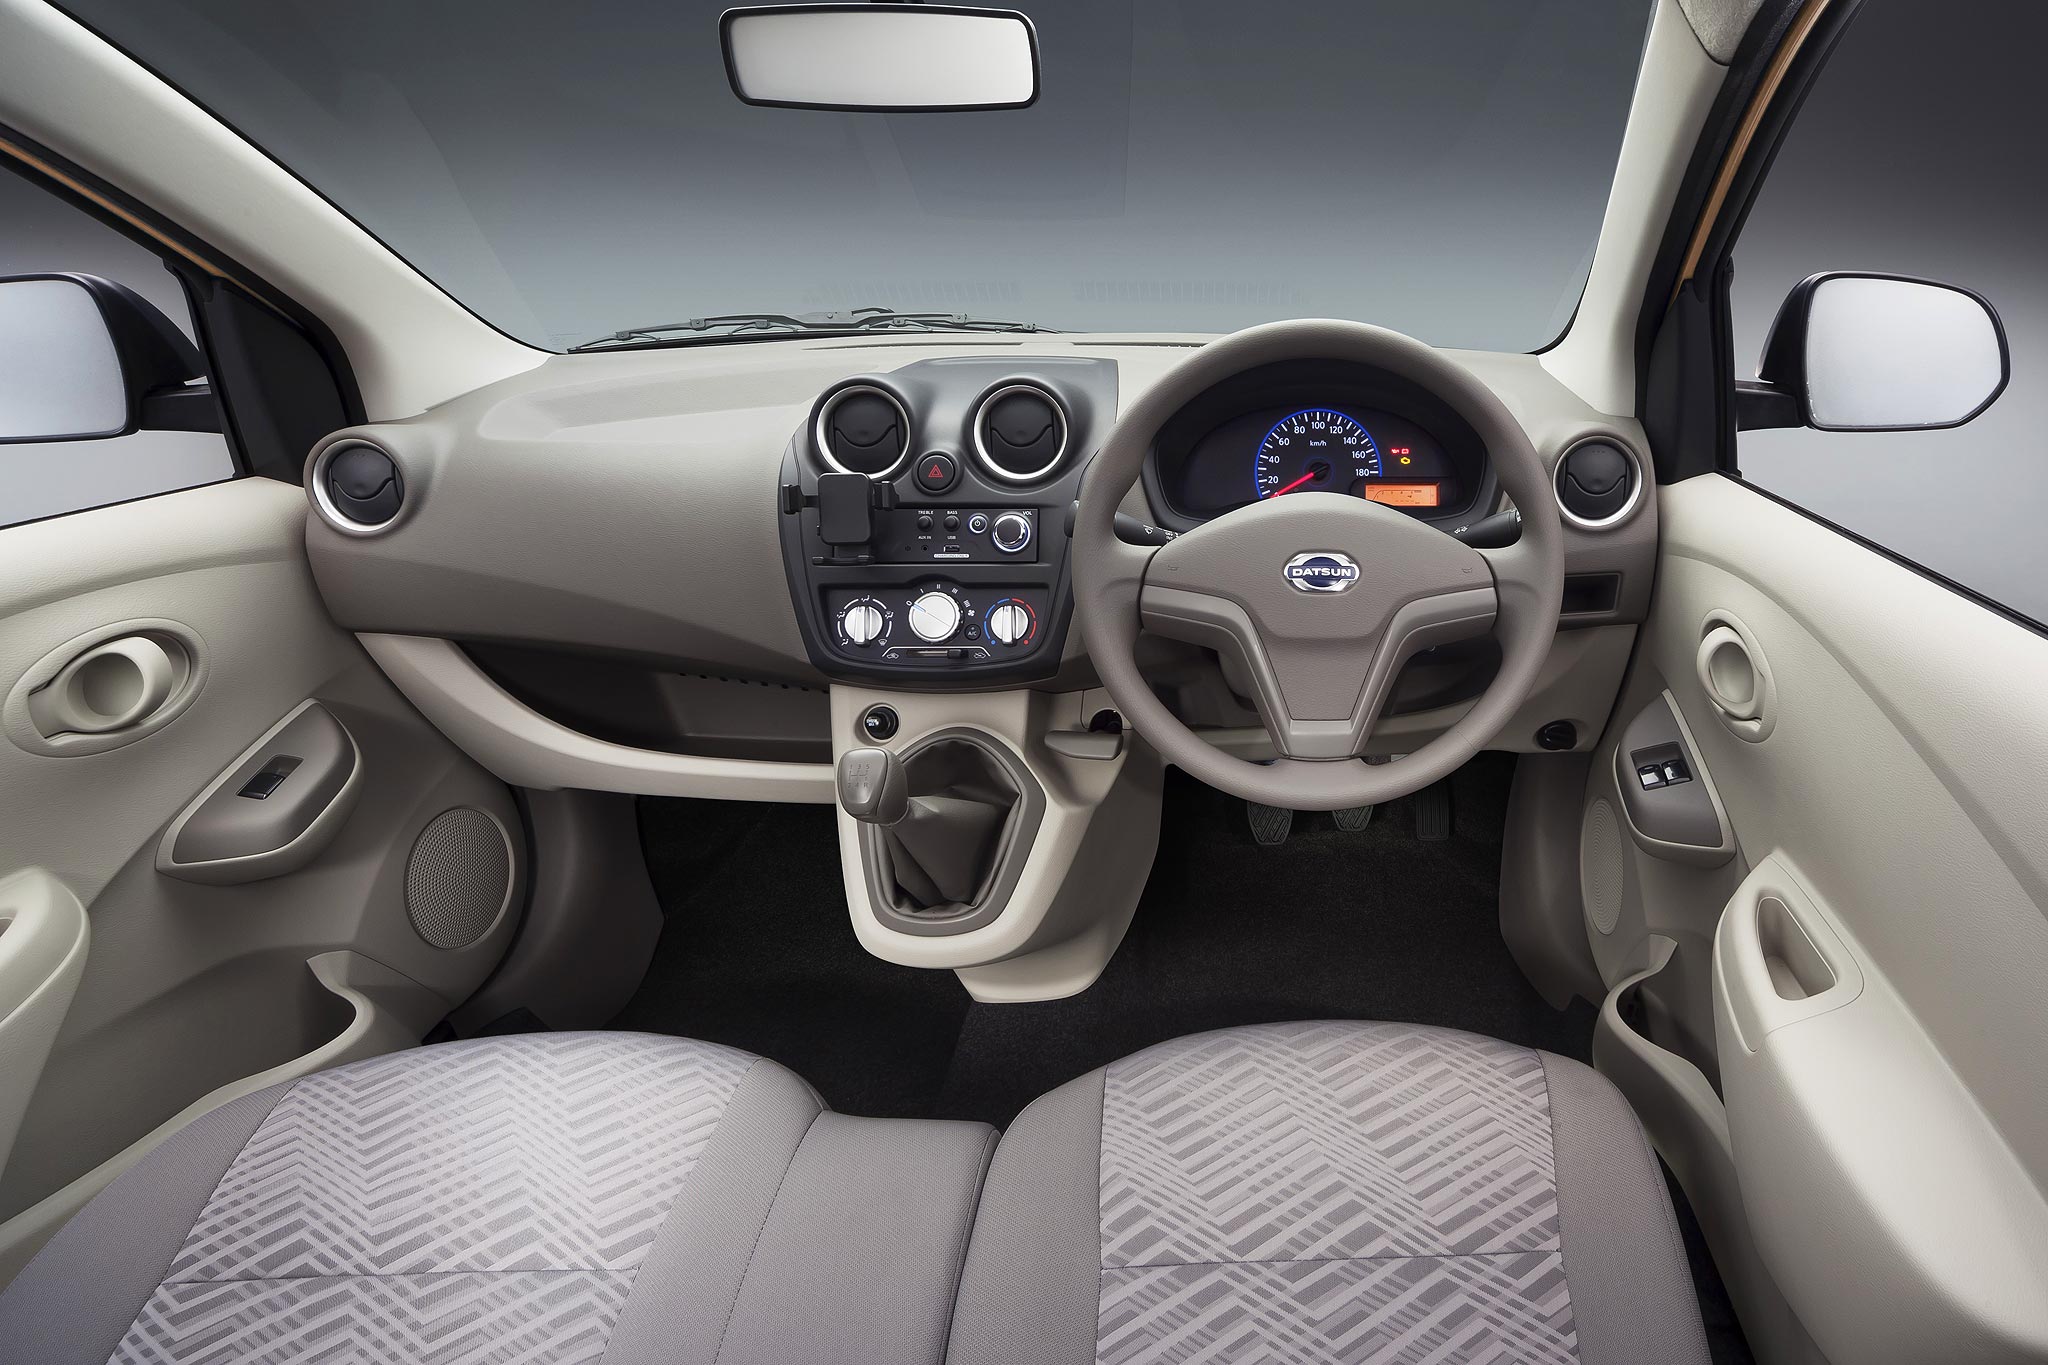  Datsun  GO Plus Interior  AutonetMagz Review Mobil  dan 